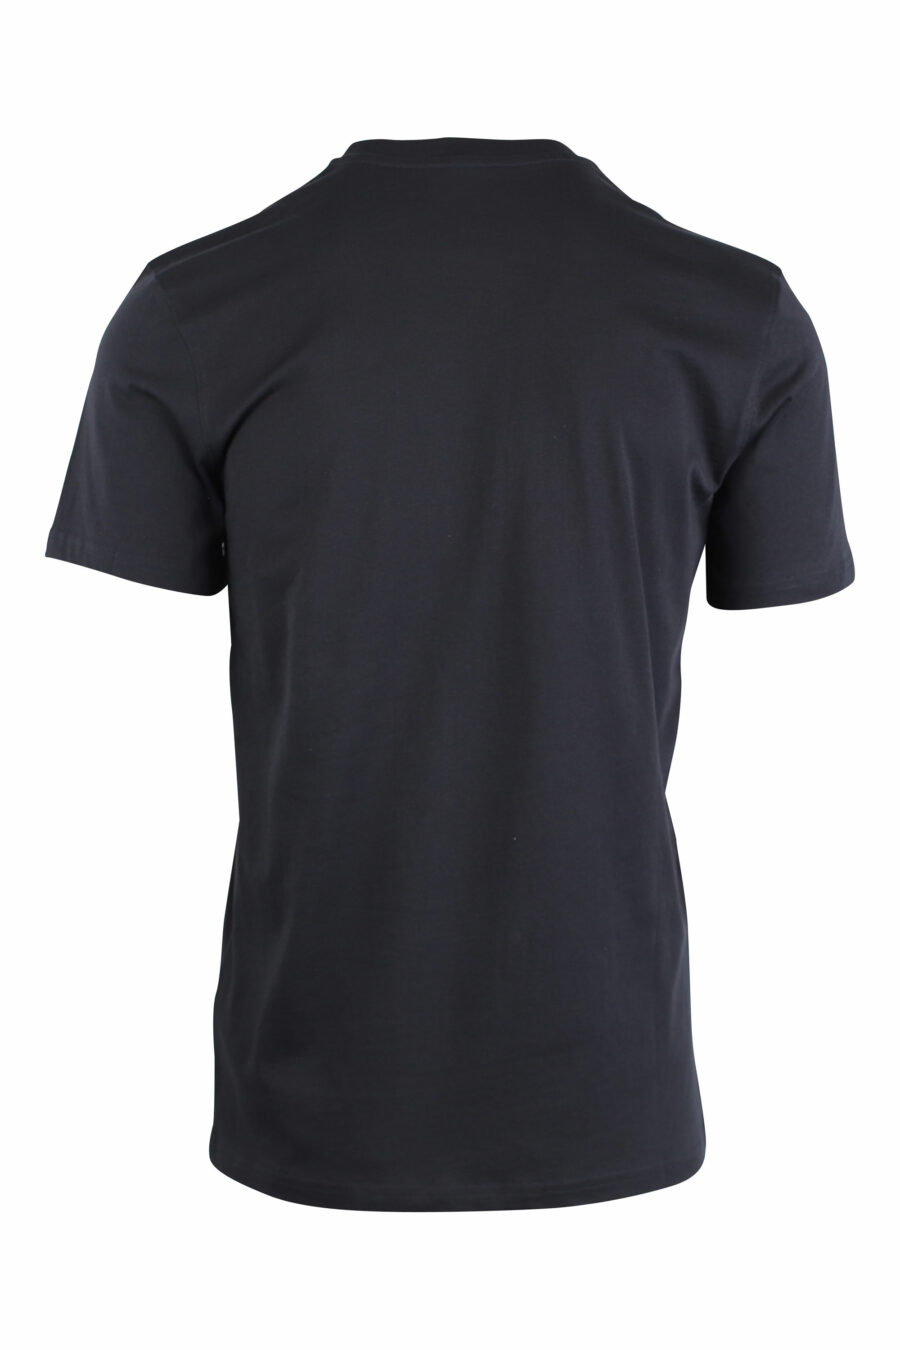 T-shirt preta com logótipo de riscas brancas - IMG 1479